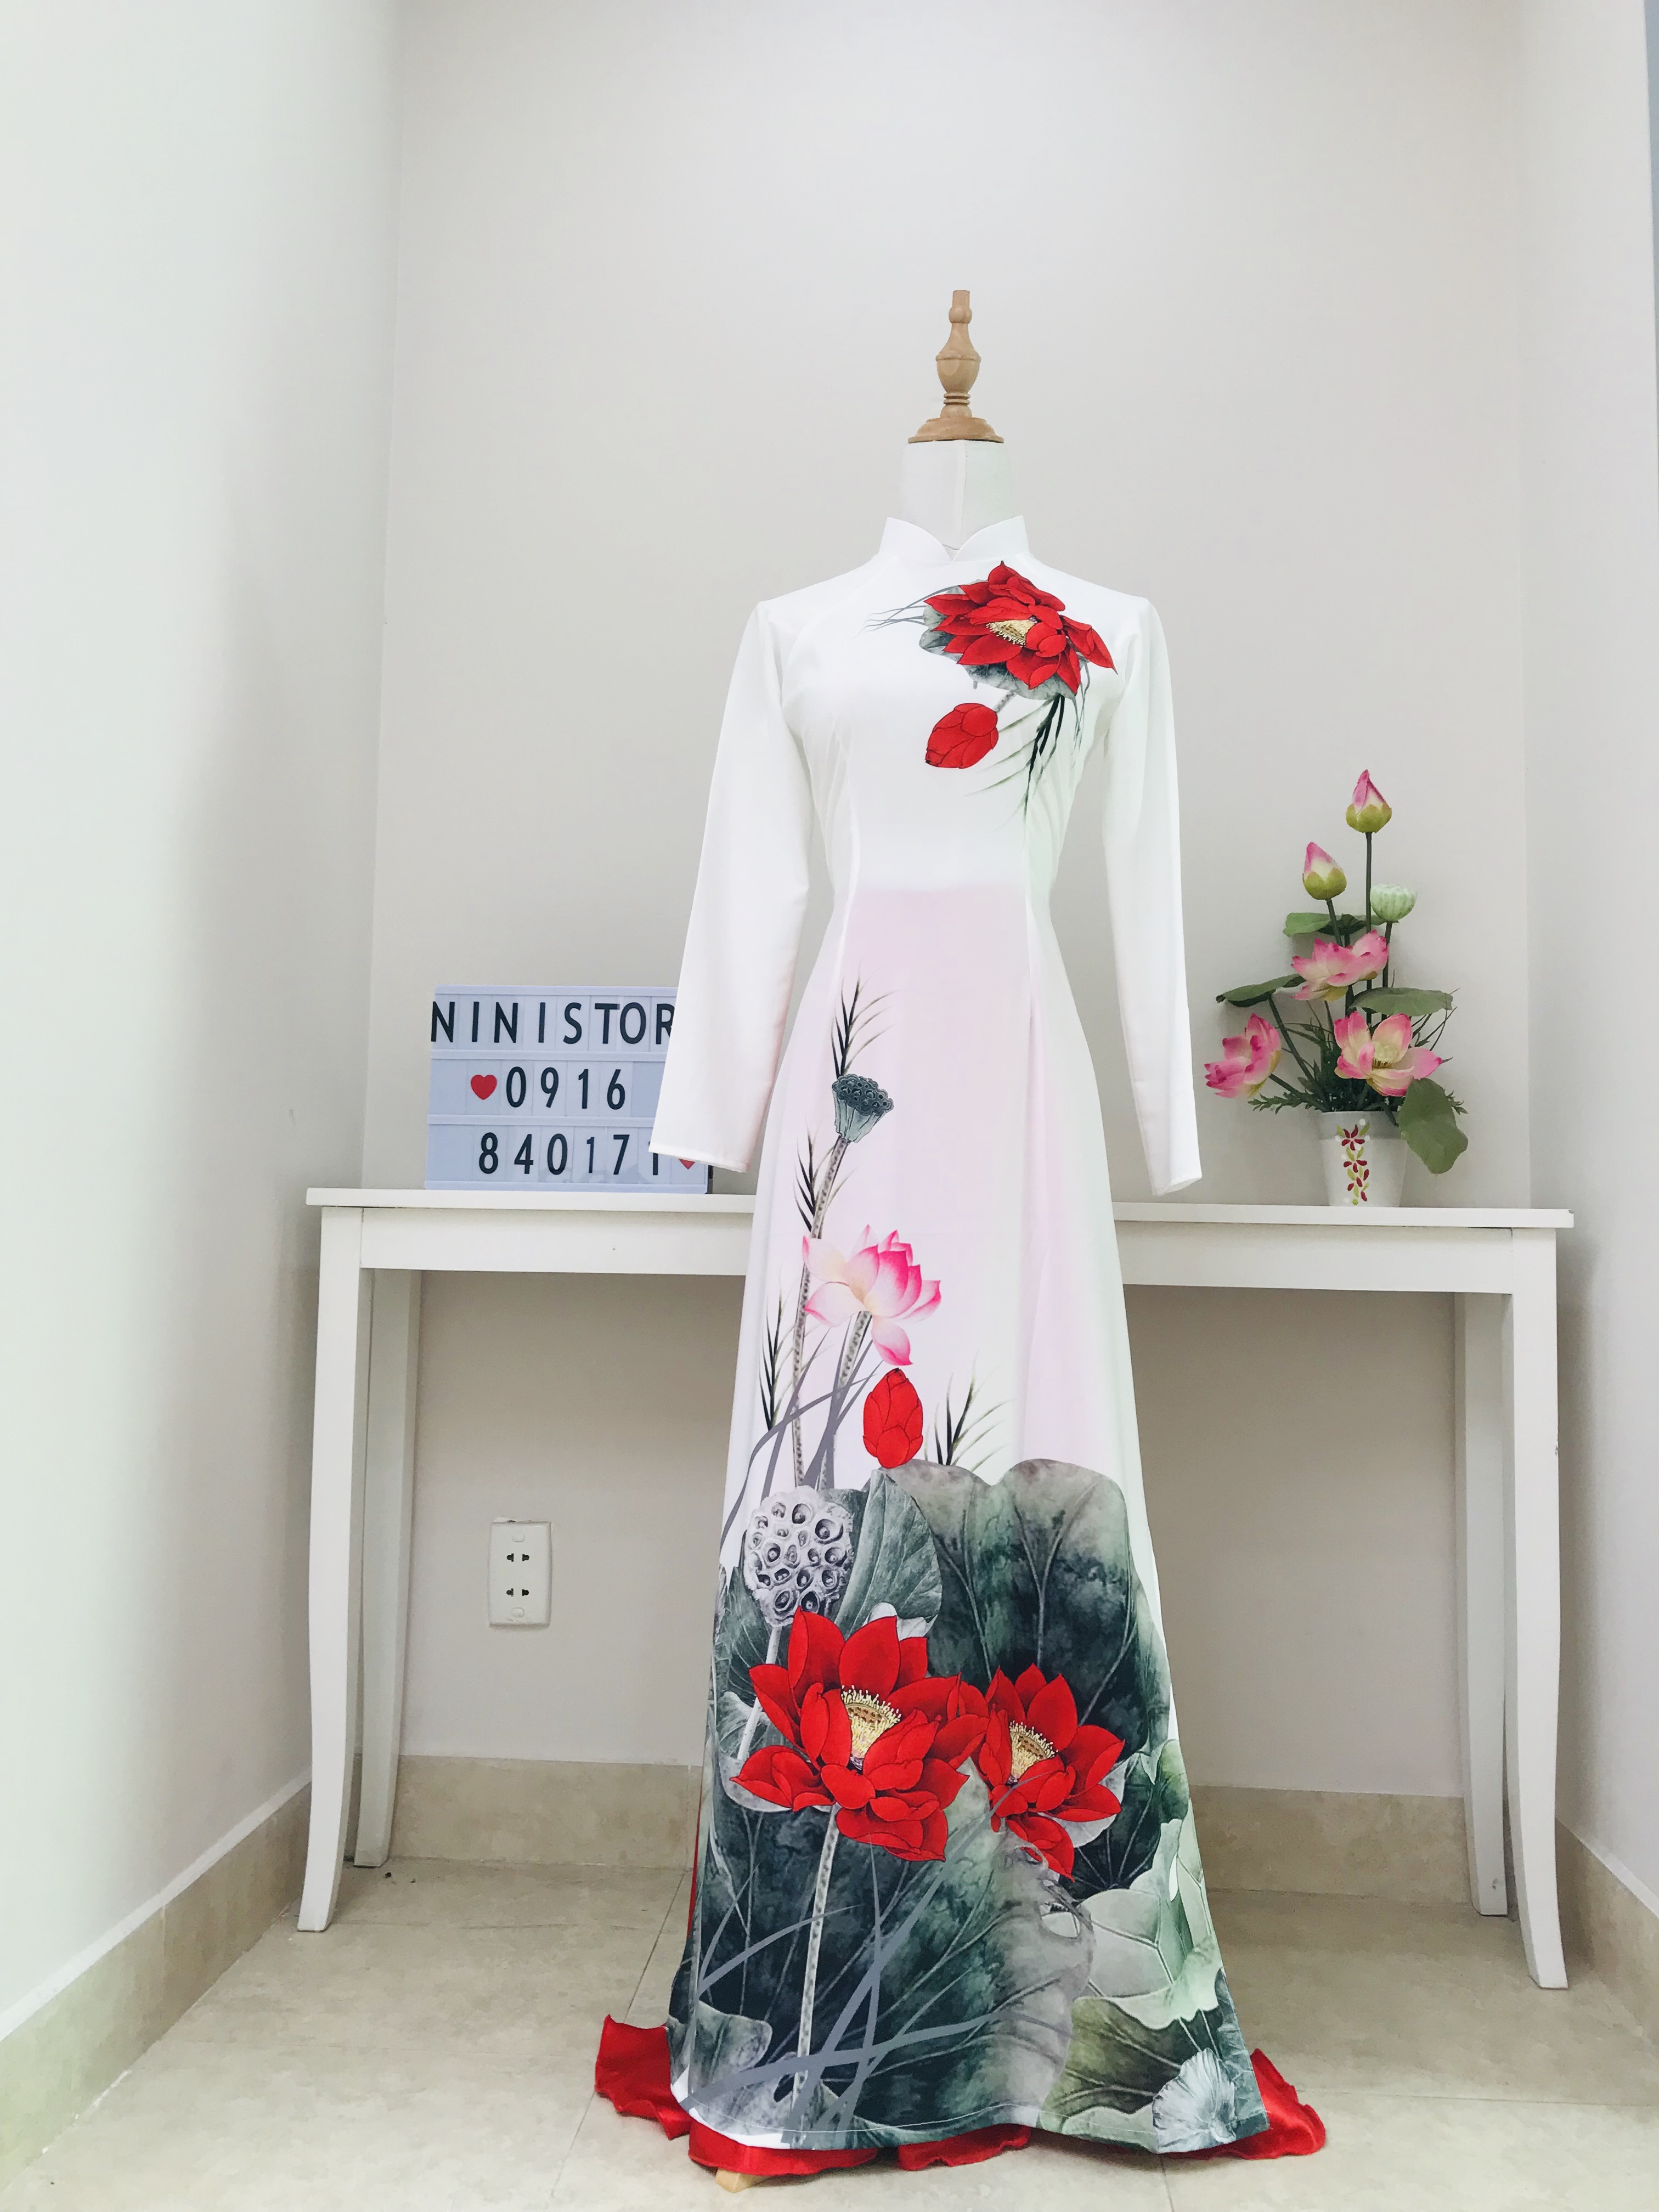 Hoa hậu Ngọc Hân chụp hình áo dài trong không gian nhà cổ Bình Thủy